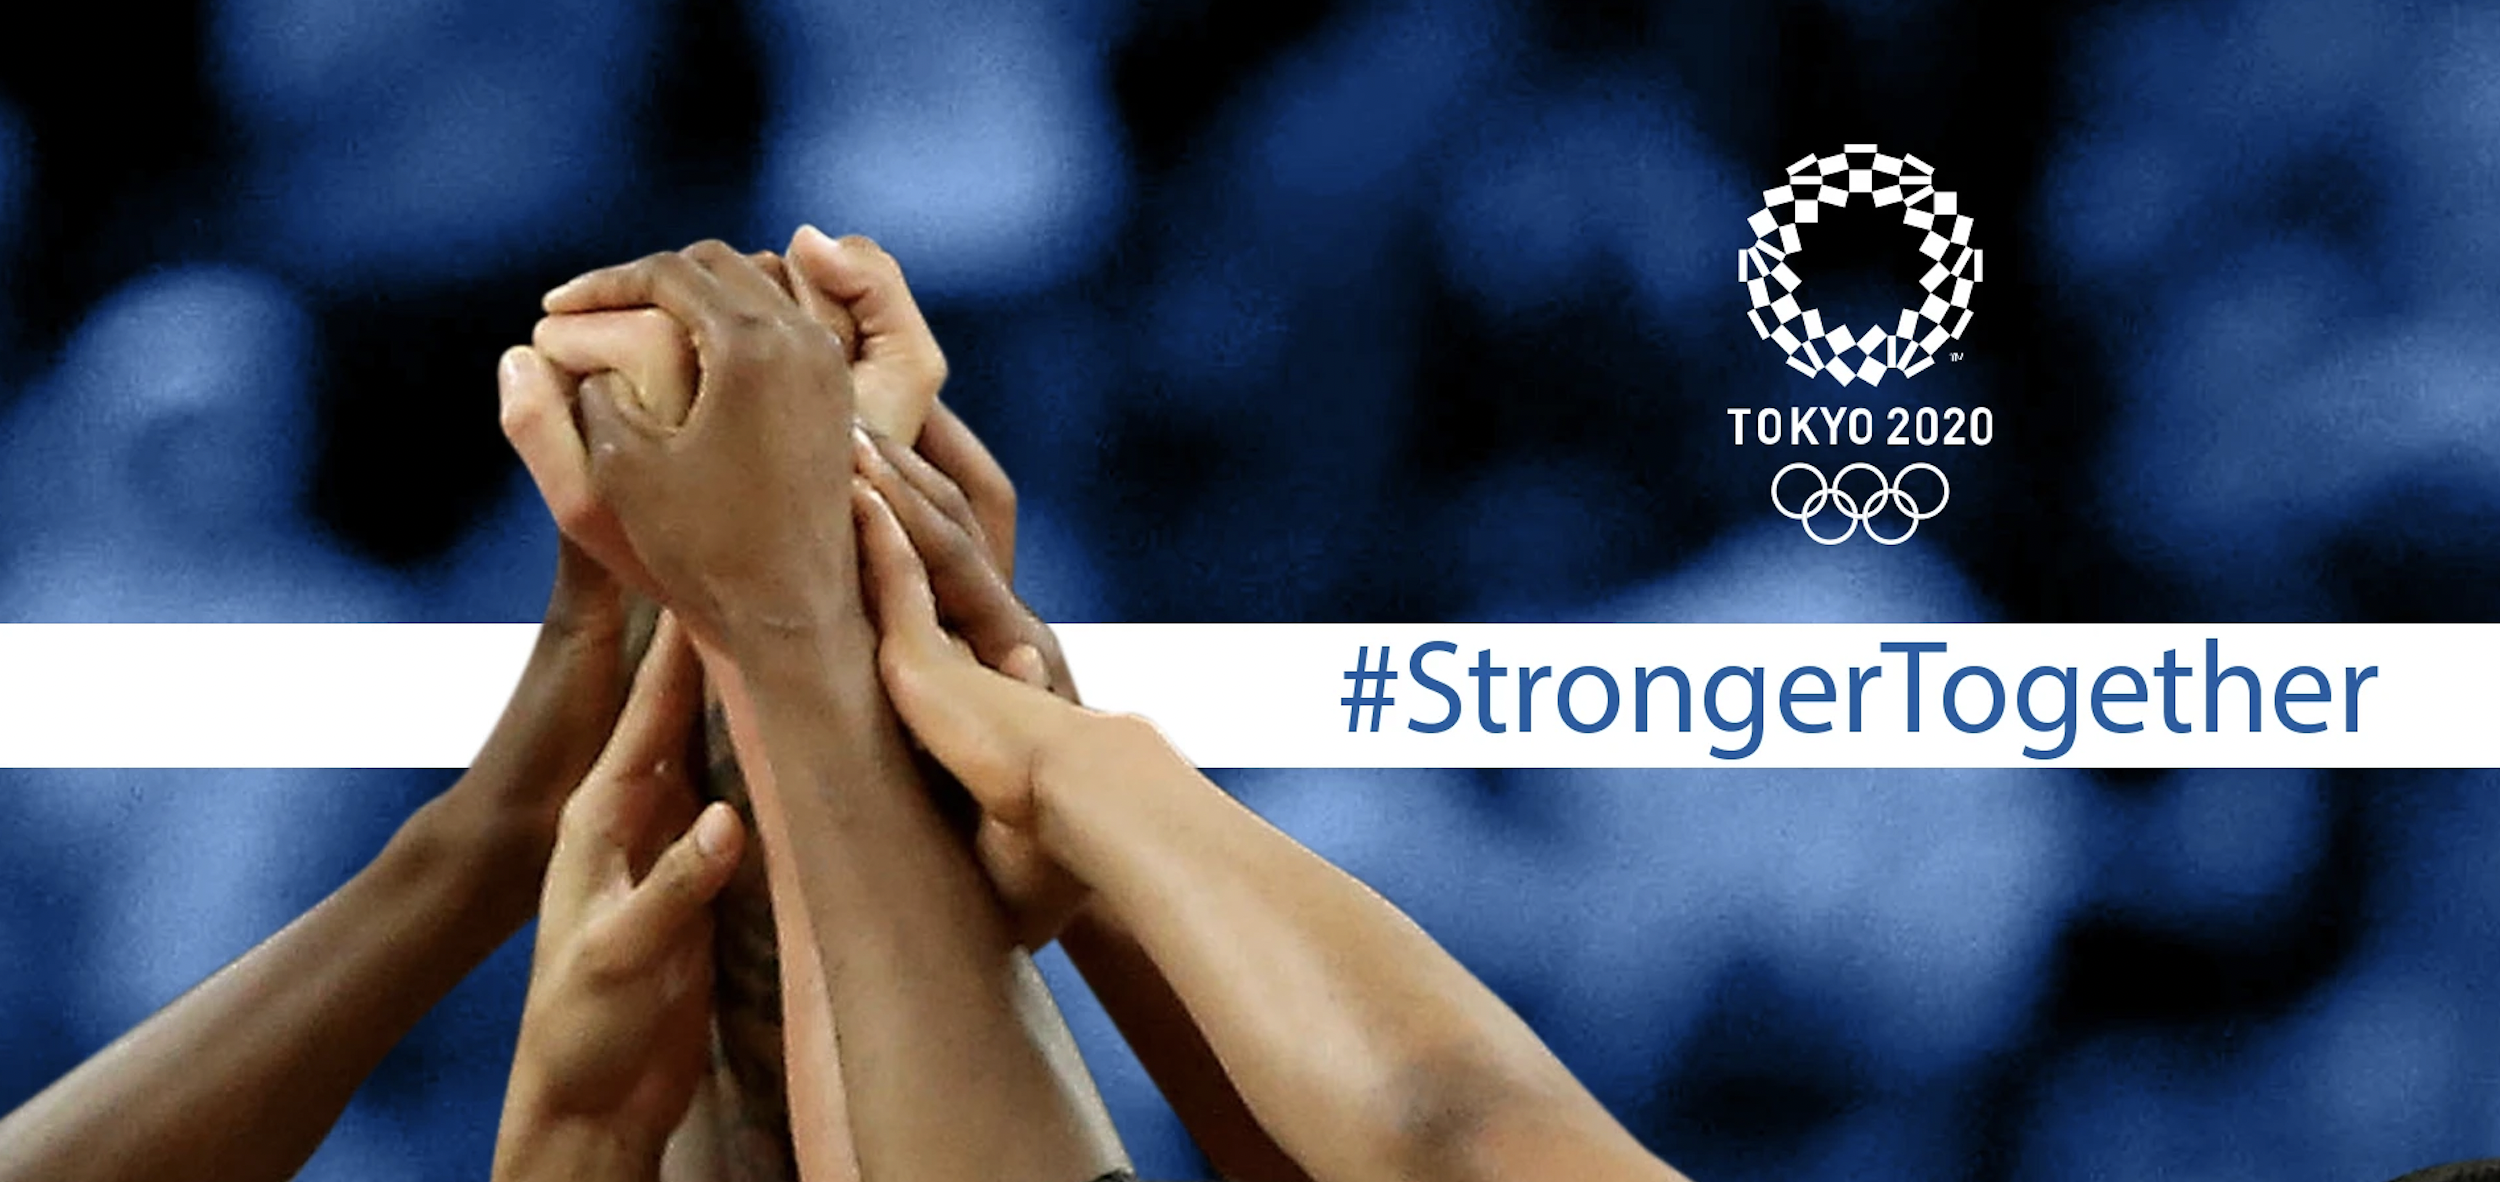 #StrongerTogether la campaña de los Juegos Olímpicos de Tokio